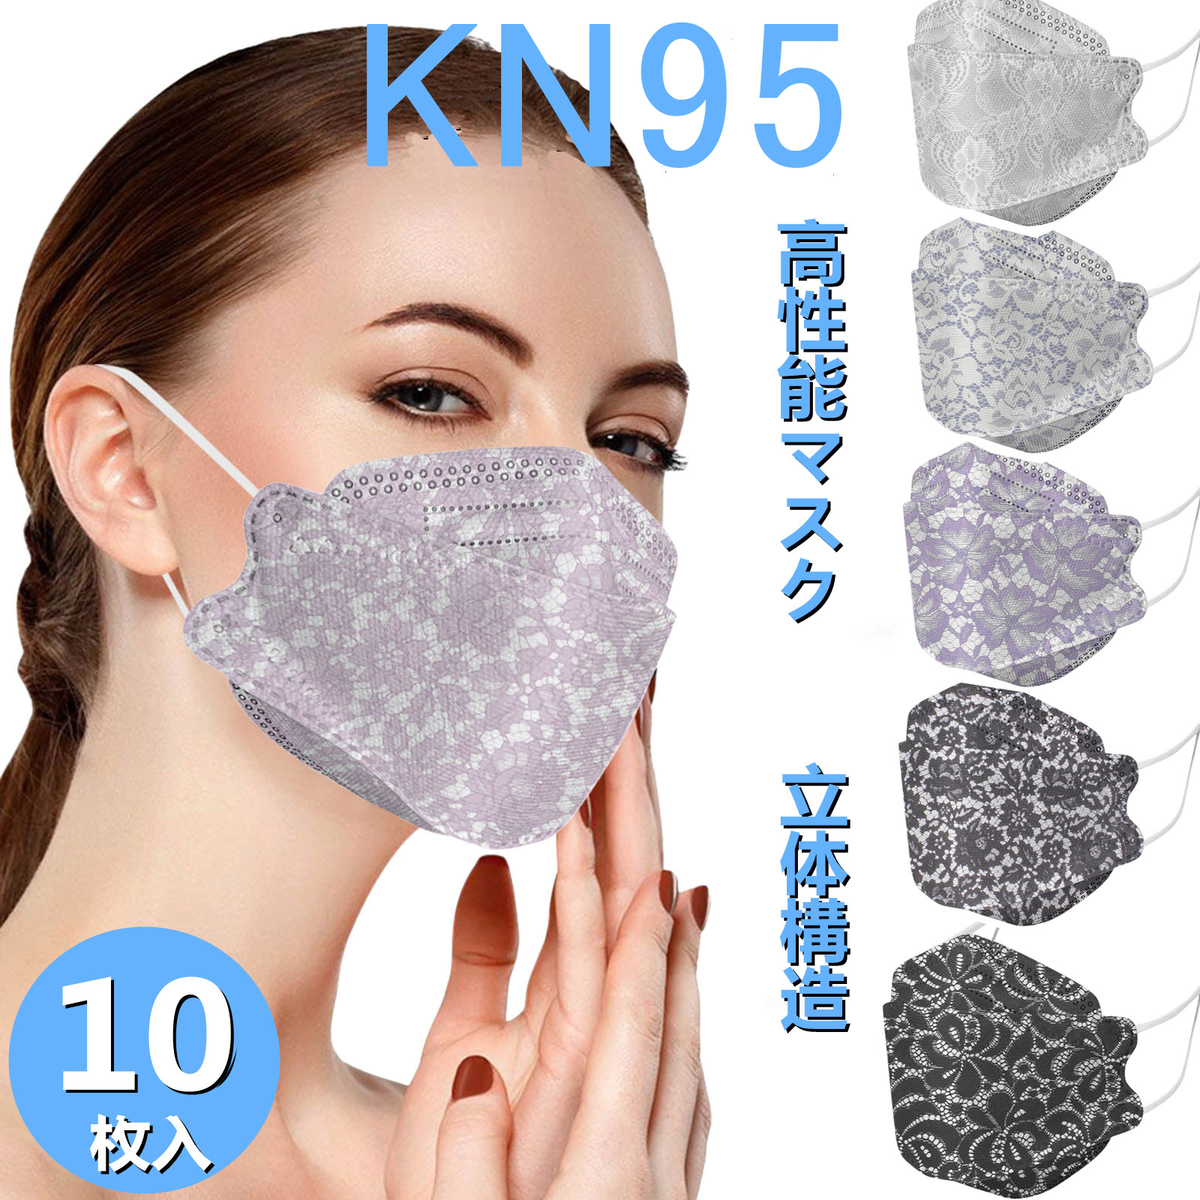 【楽天市場】KN95マスク 不織布 カラー 柄 レース柄 使い捨て MASK 